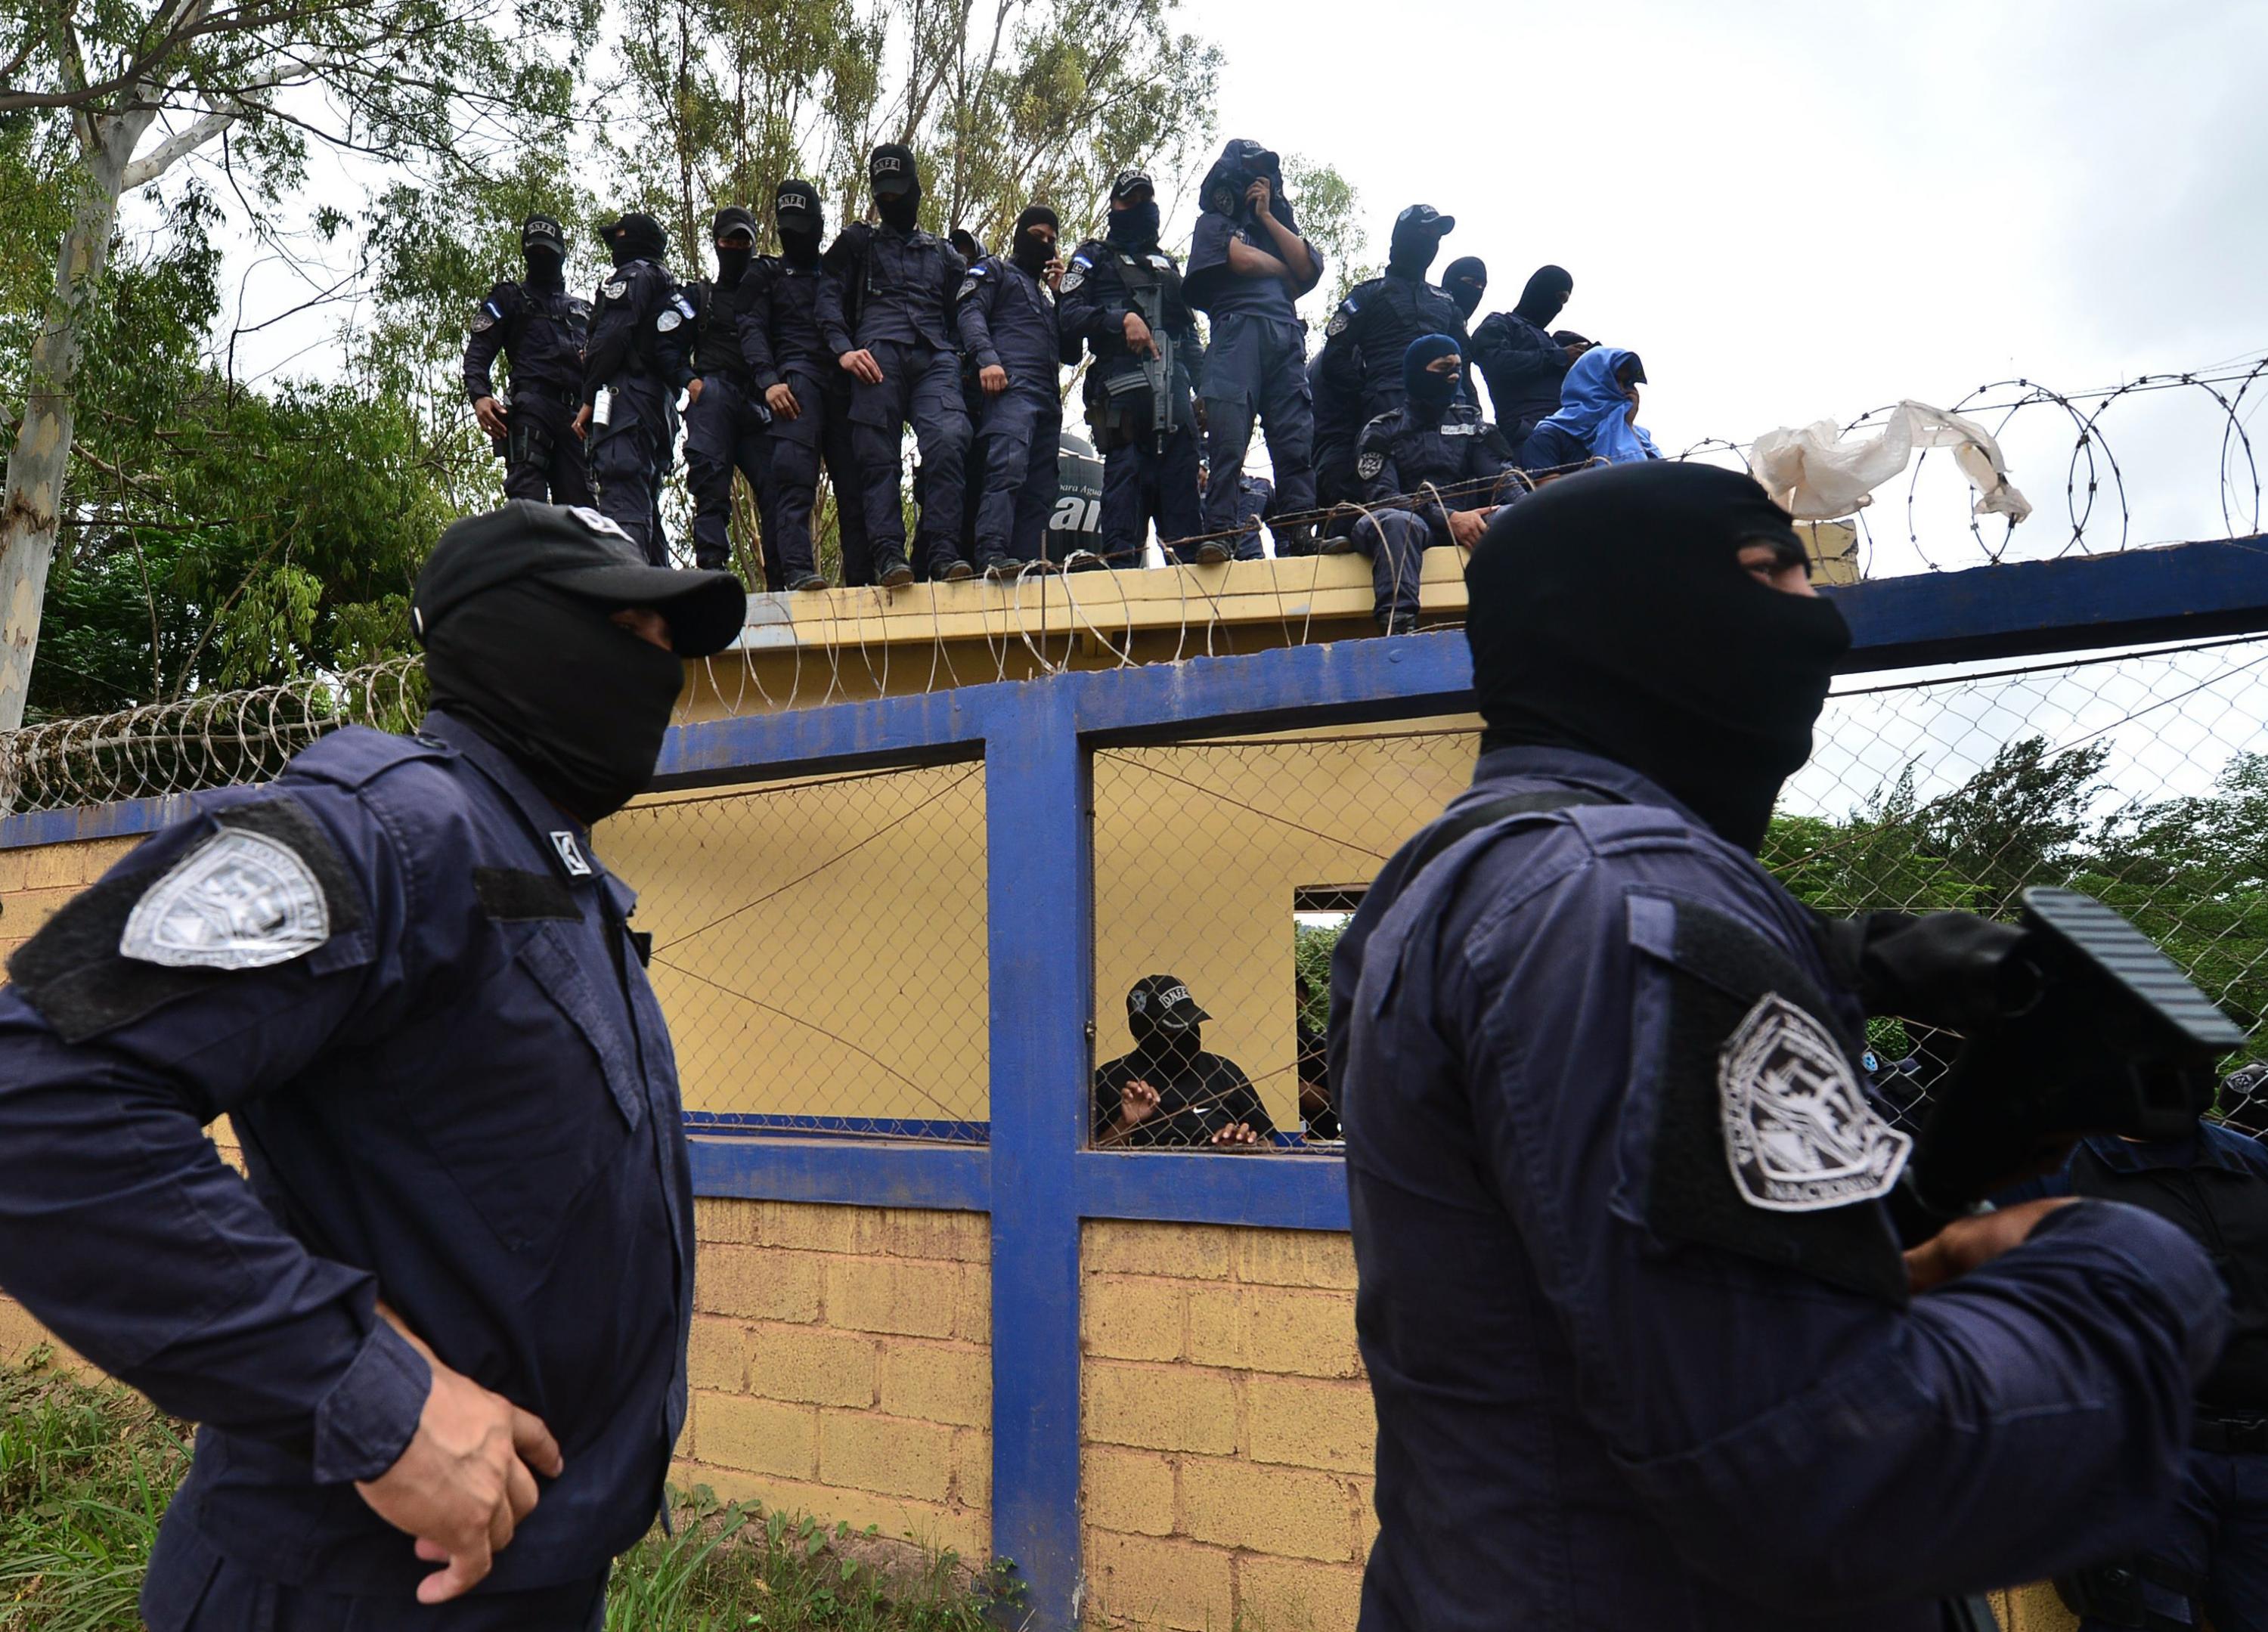 Miembros del Comando Especial de Fuerzas Especiales, Comando Cobras, anunciaron una protesta de 